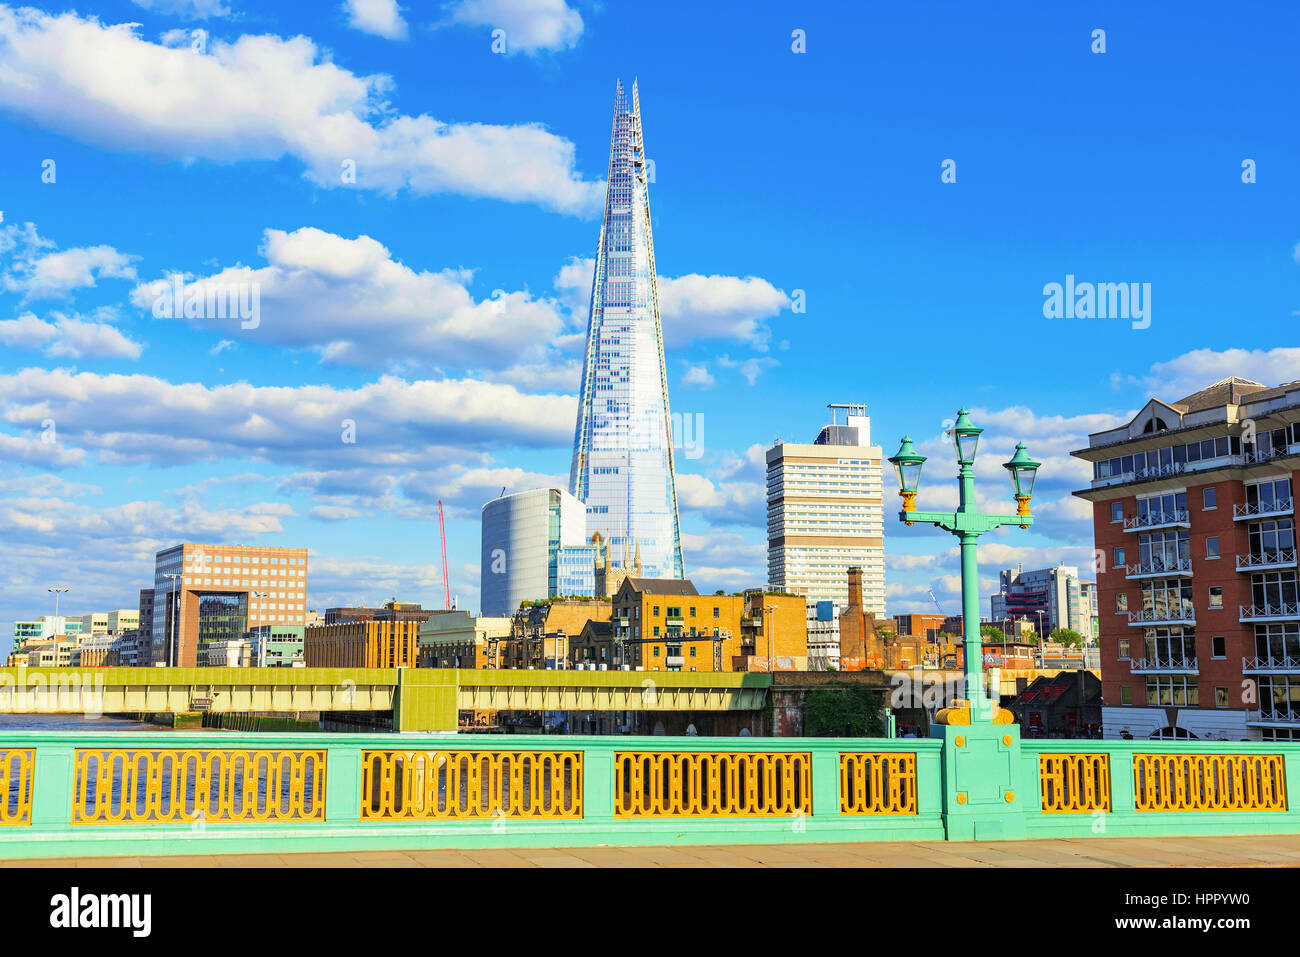 LONDON - 6. Juli 2016: Der Shard Gebäude ist ein Wahrzeichen im Londoner Finanzdistrikt. Dieses Foto stammt von Southwark bridge die Stockfoto